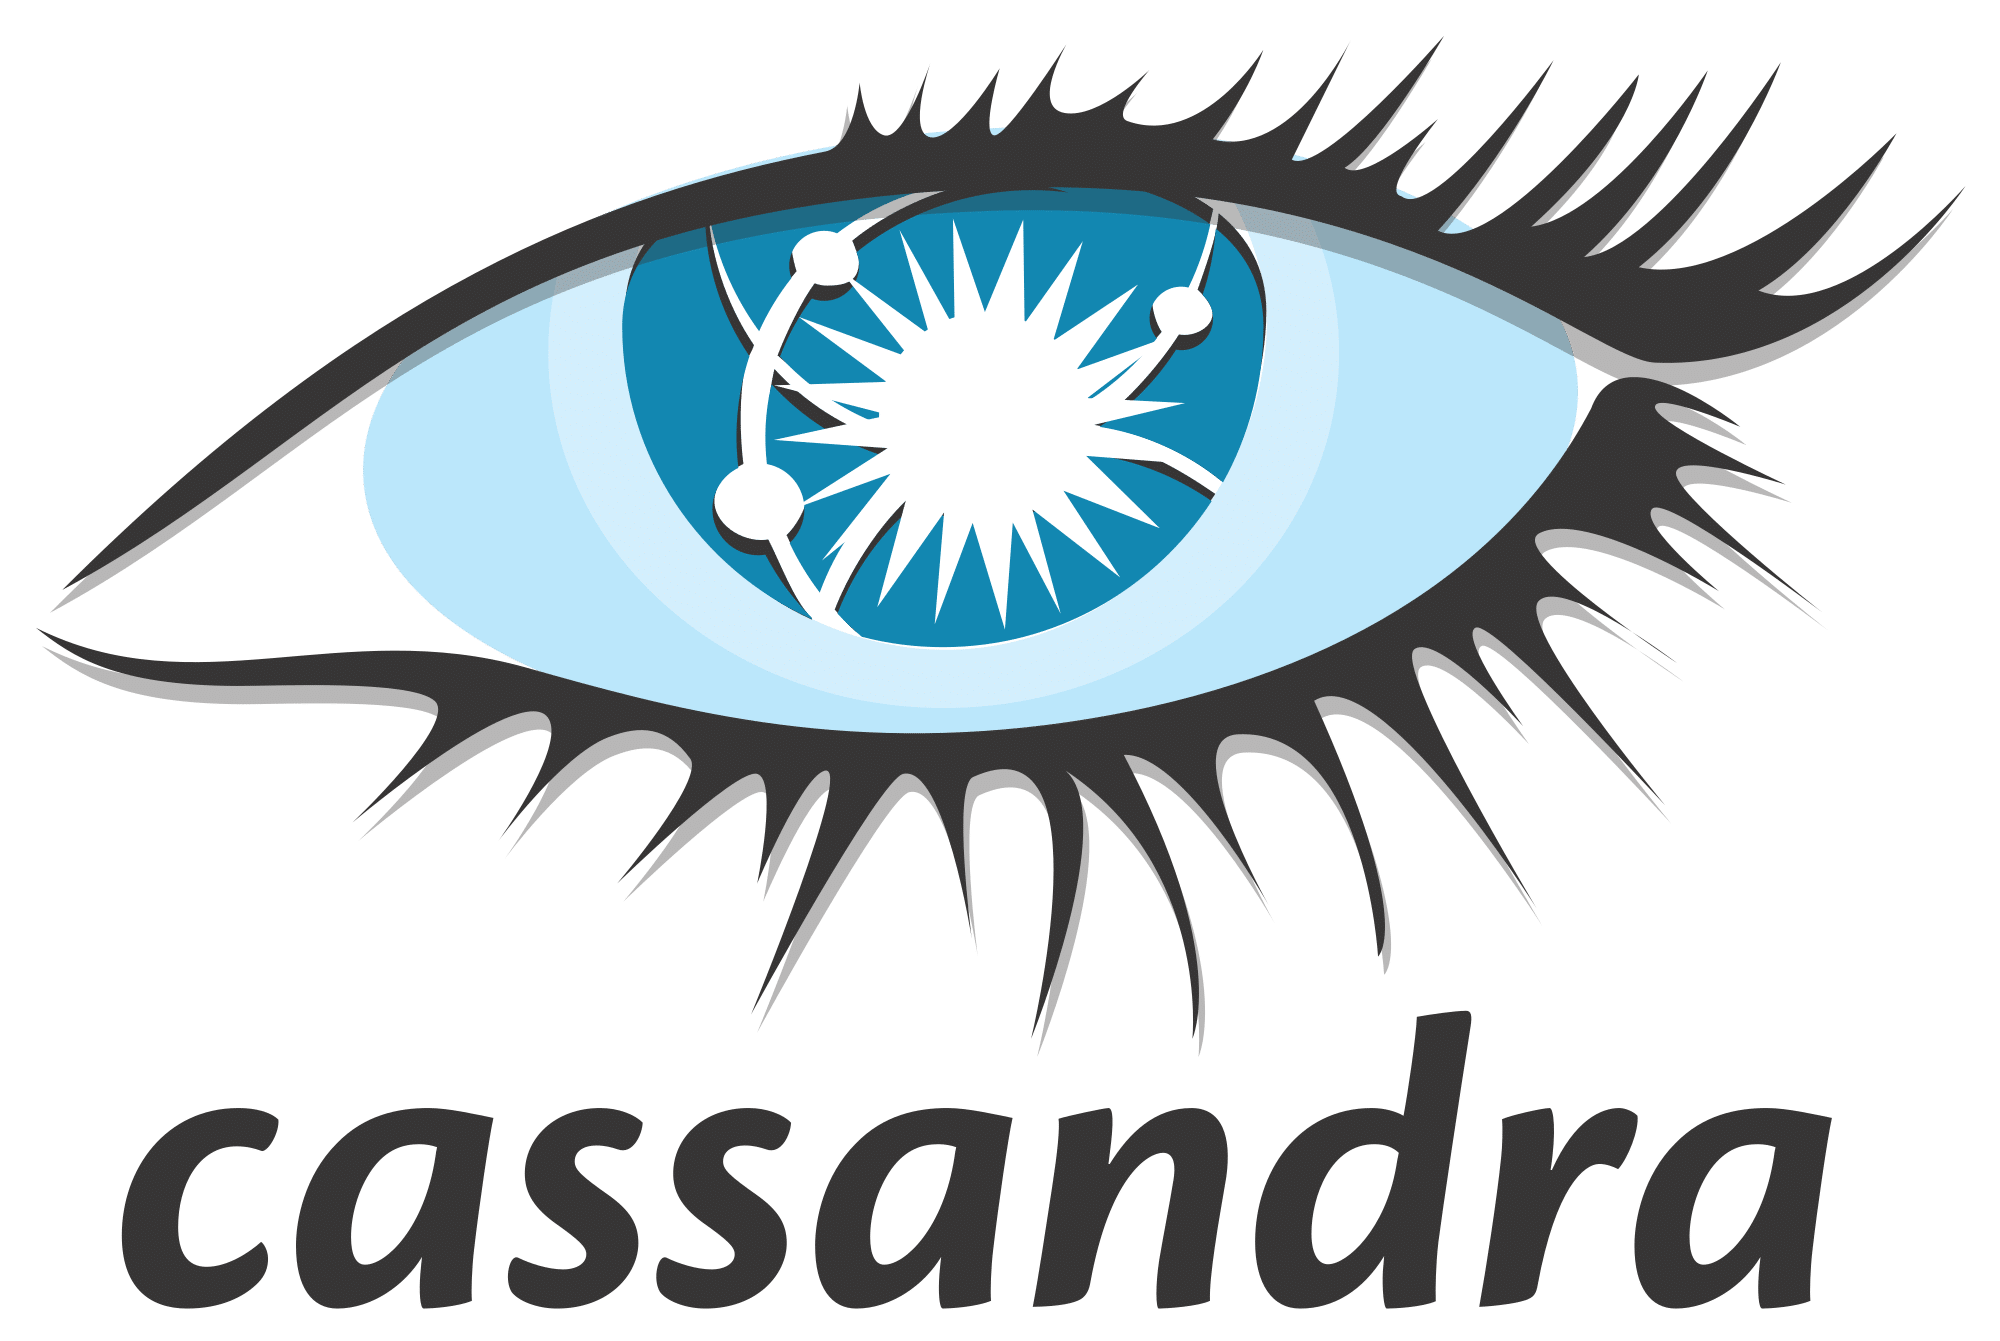 Cassandra software